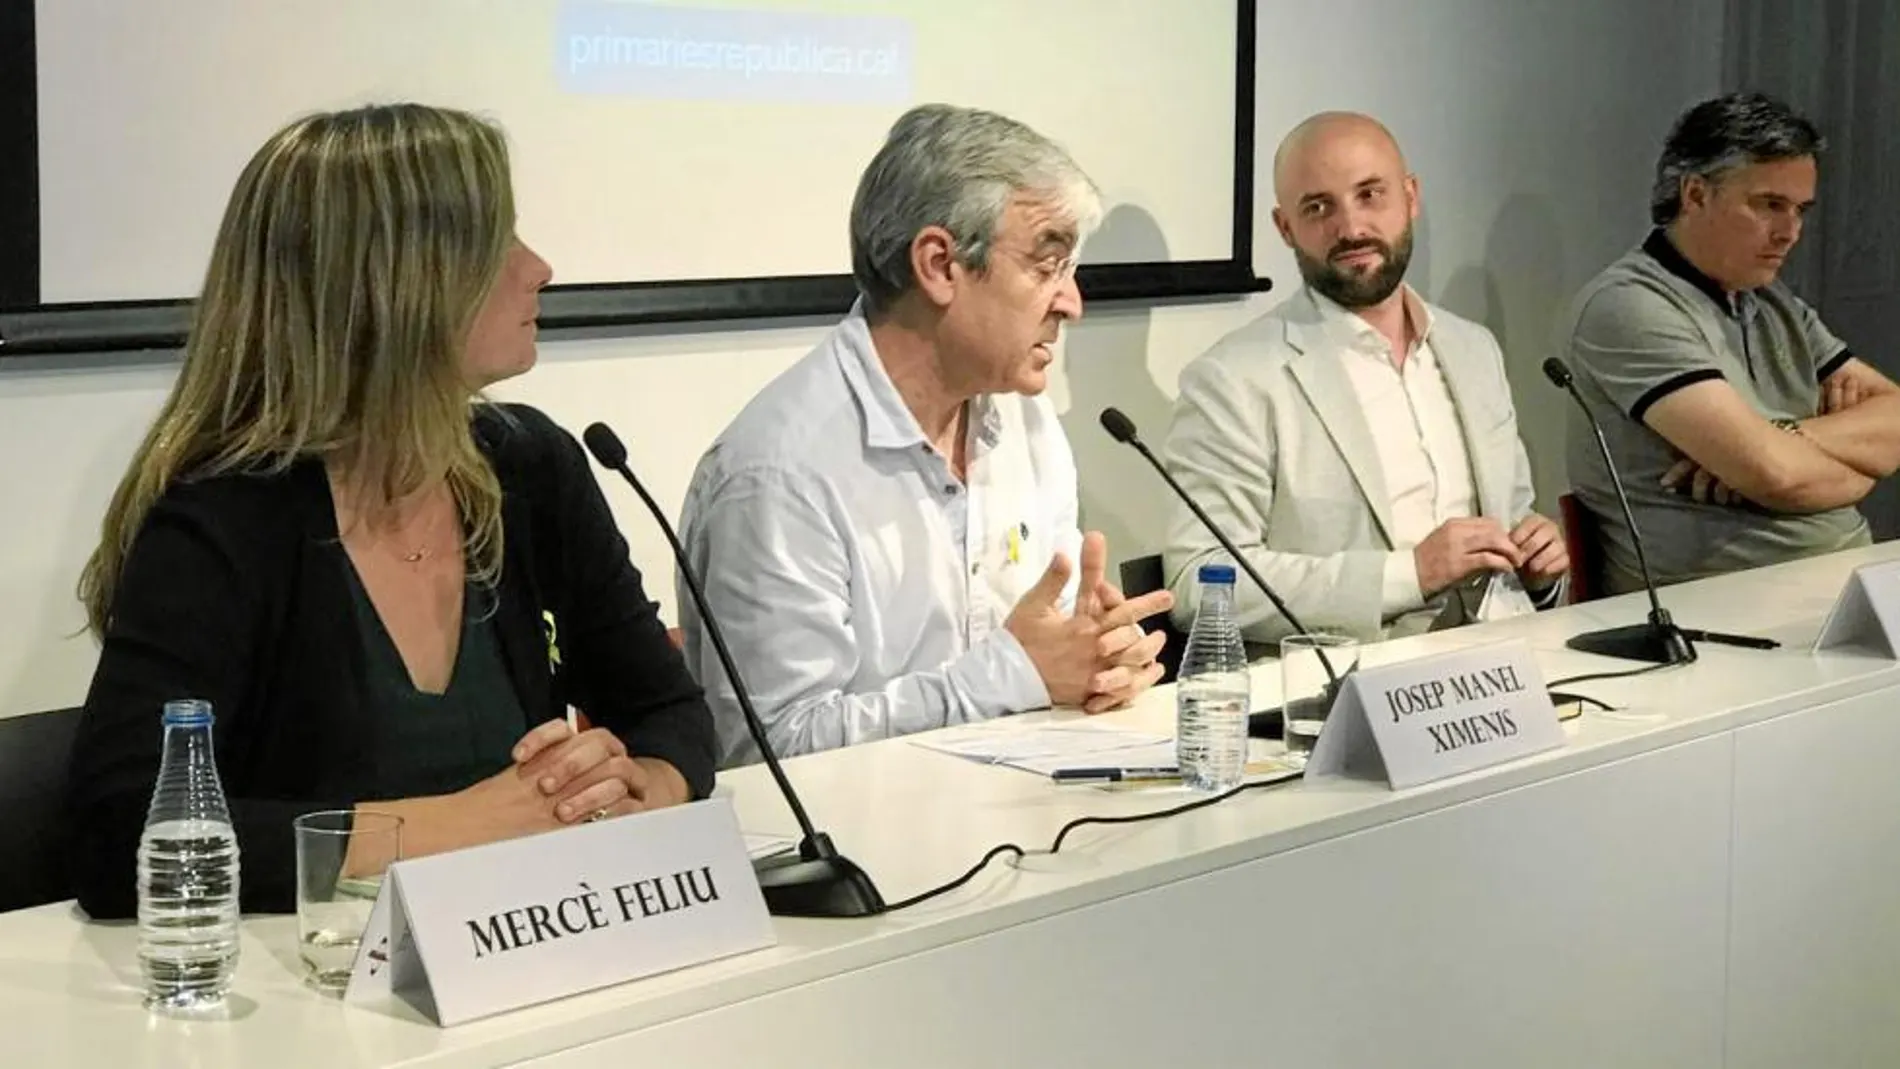 Jordi Graupera y Josep Manel Ximenis junto a los responsables de las candidaturas en Reus y Mataró, ayer en la rueda de prensa / La Razón